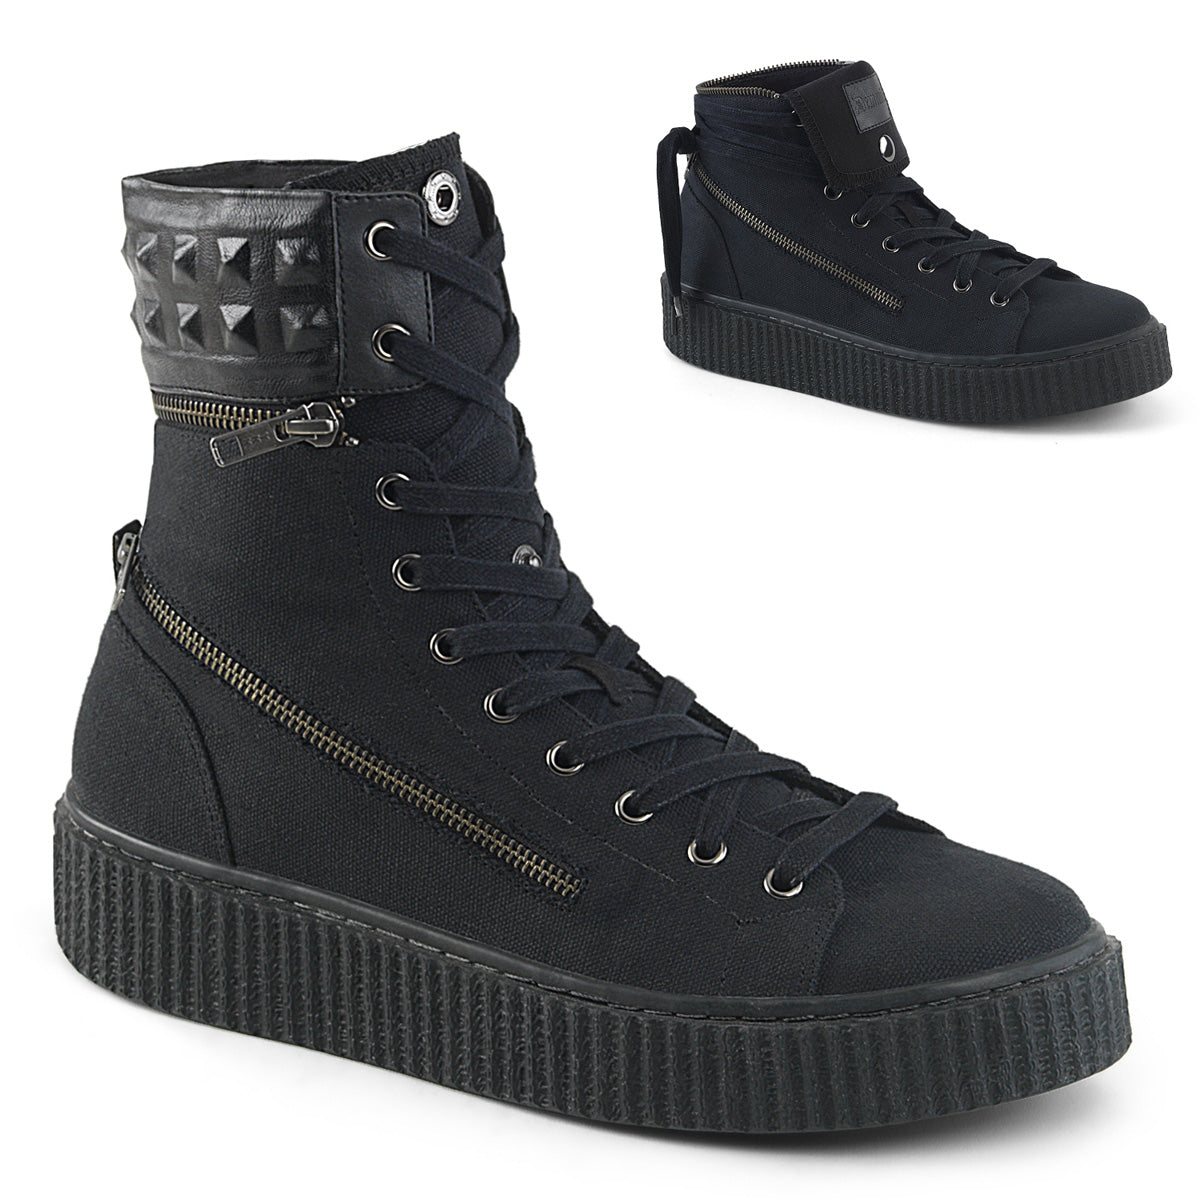 SNEEKER-270 Black Canvas Sneakers